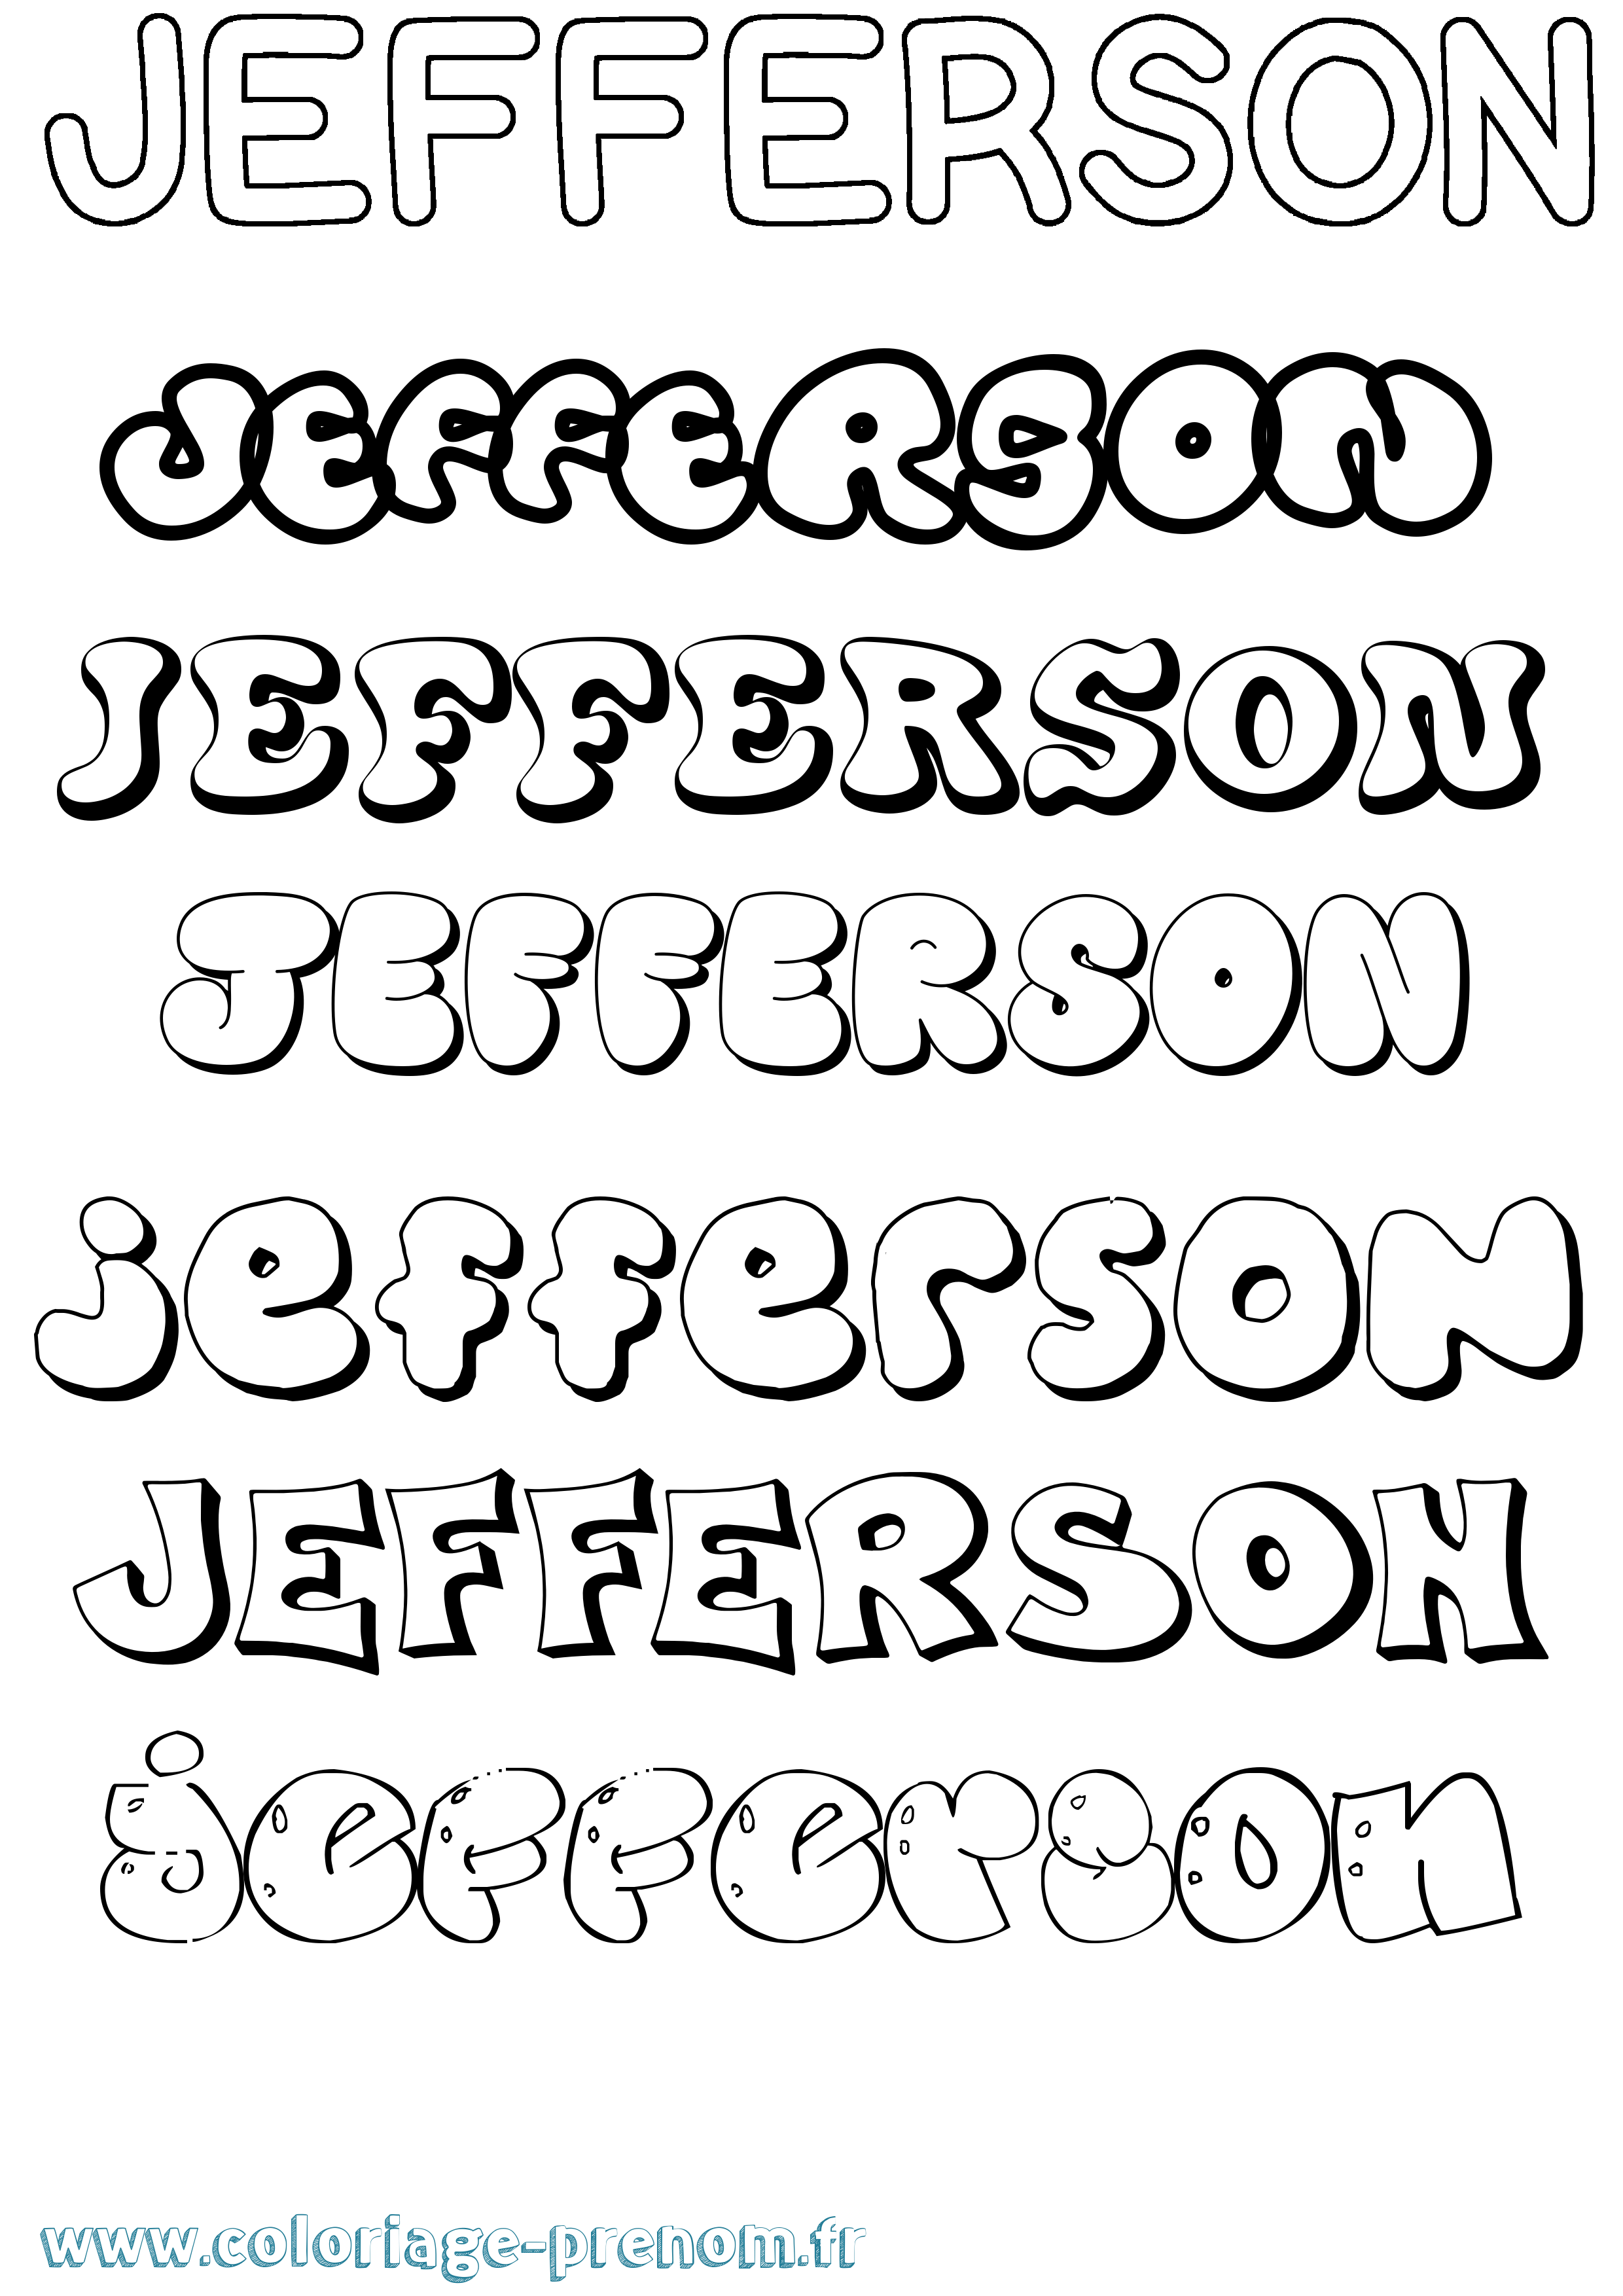 Coloriage prénom Jefferson Bubble